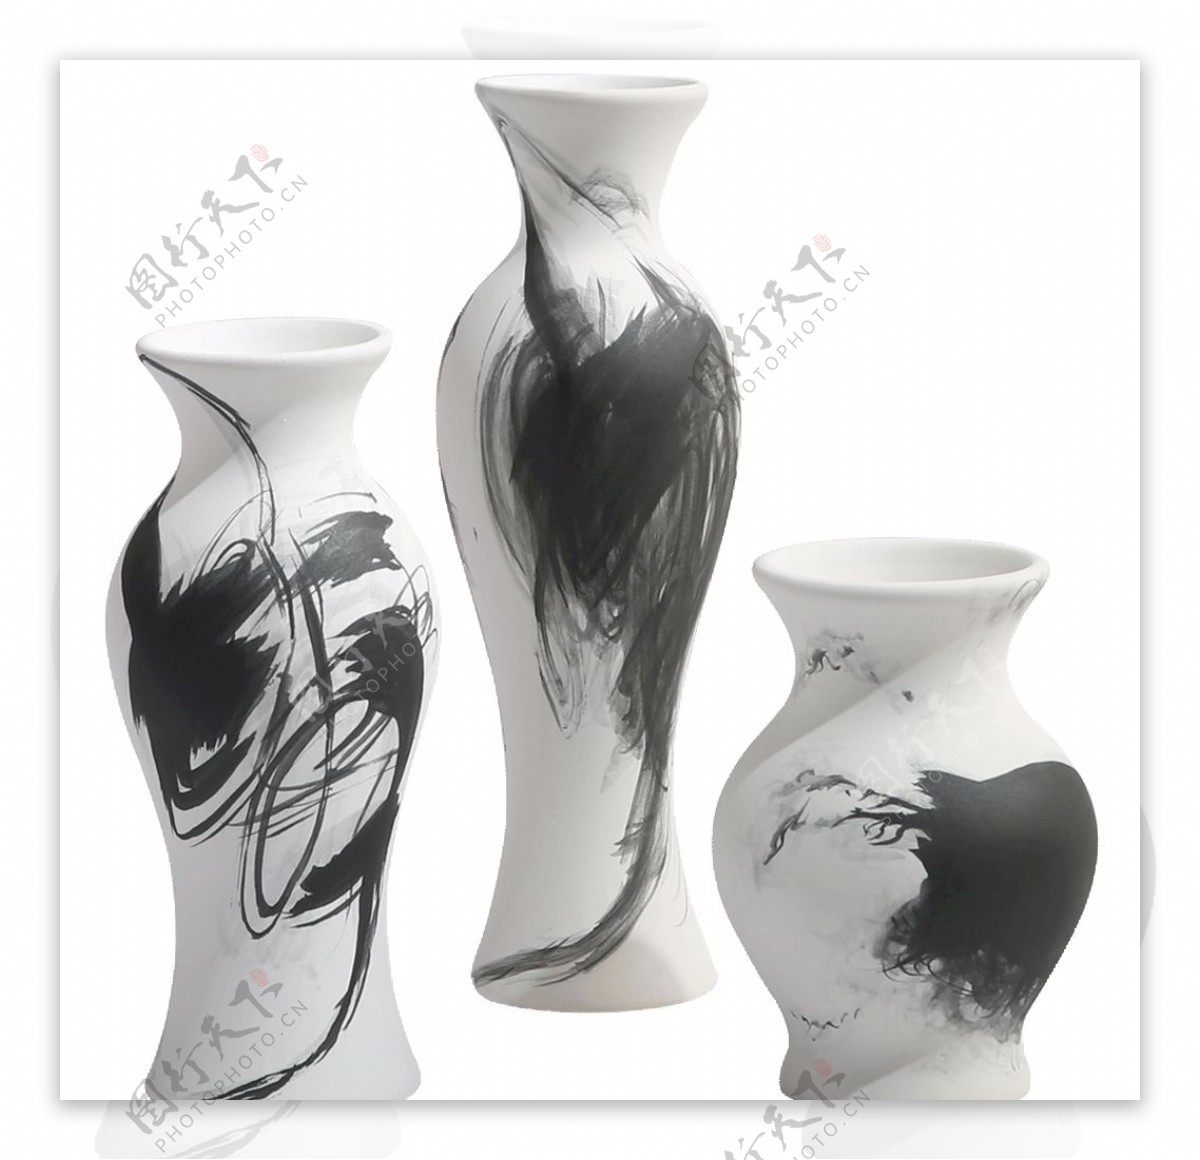 黑白水墨手绘陶瓷小花瓶图片